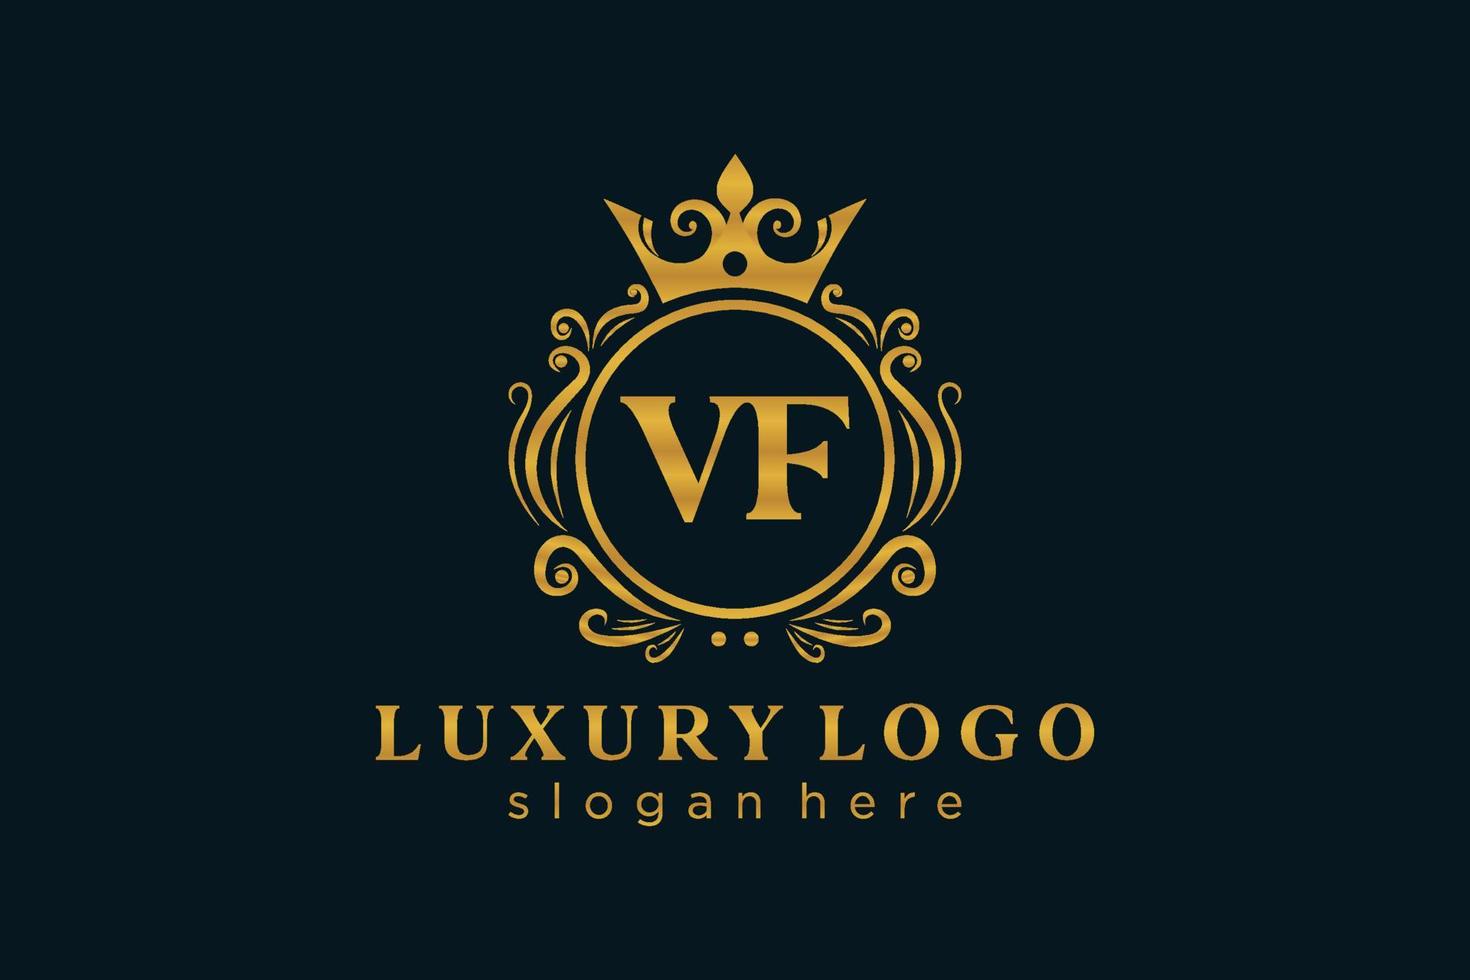 Royal Luxury Logo-Vorlage mit anfänglichem vf-Buchstaben in Vektorgrafiken für Restaurant, Lizenzgebühren, Boutique, Café, Hotel, Heraldik, Schmuck, Mode und andere Vektorillustrationen. vektor